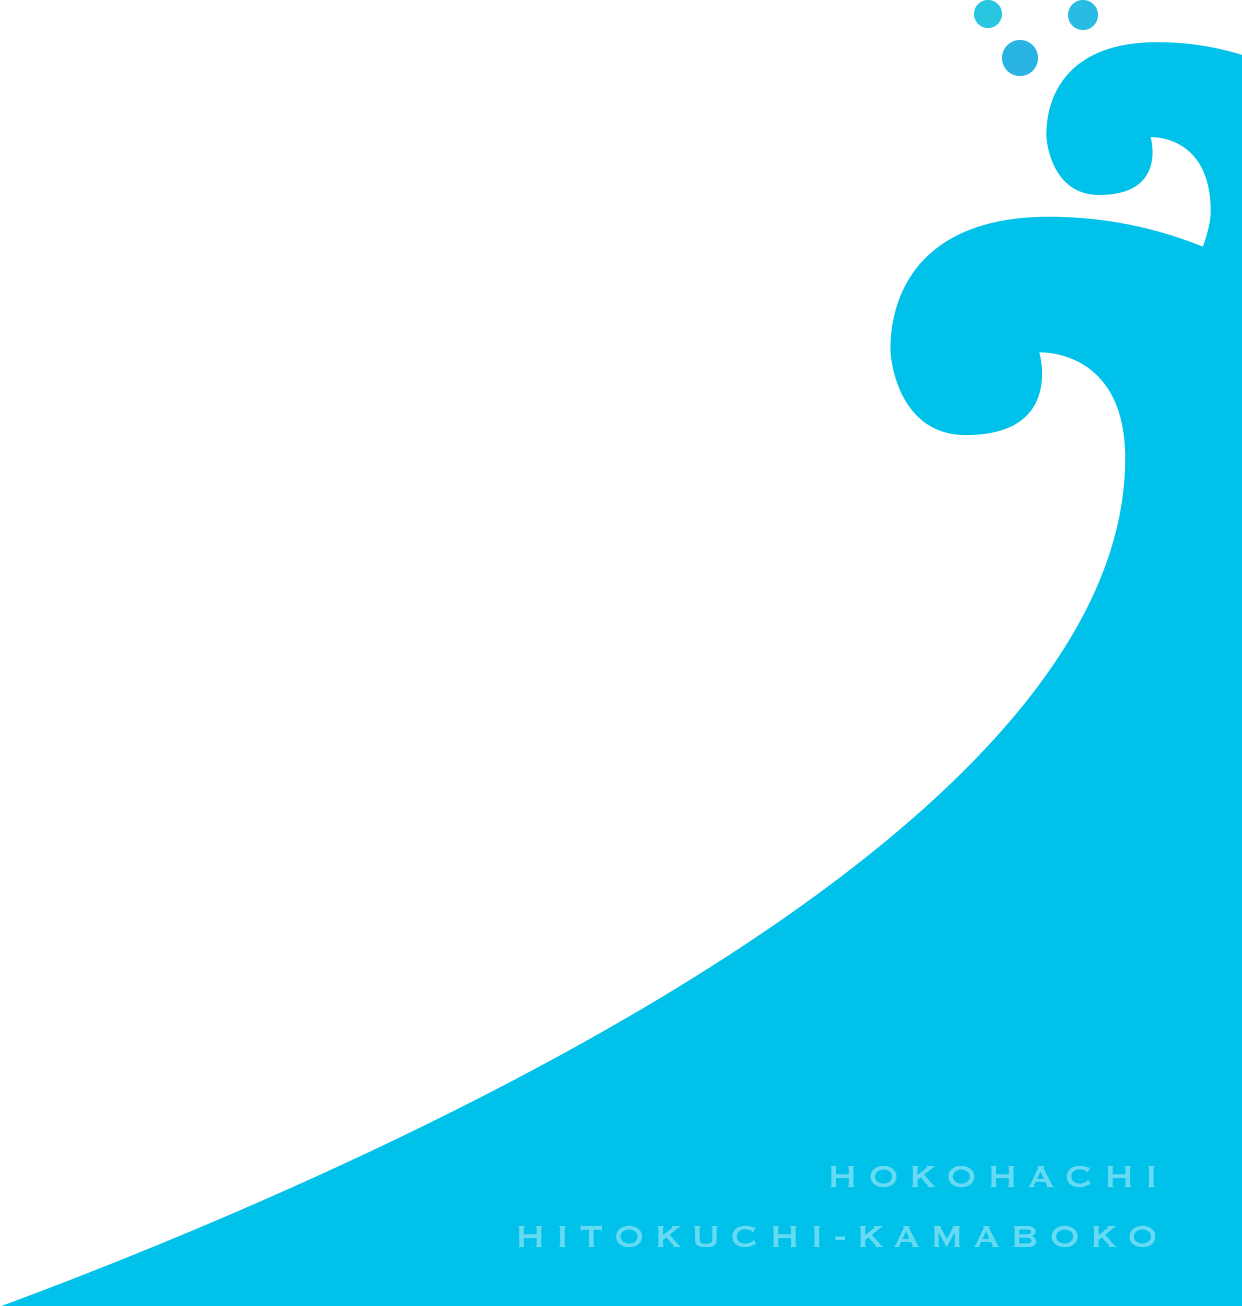 HOKOHACHI HITOKUCHI-KAMABOKO